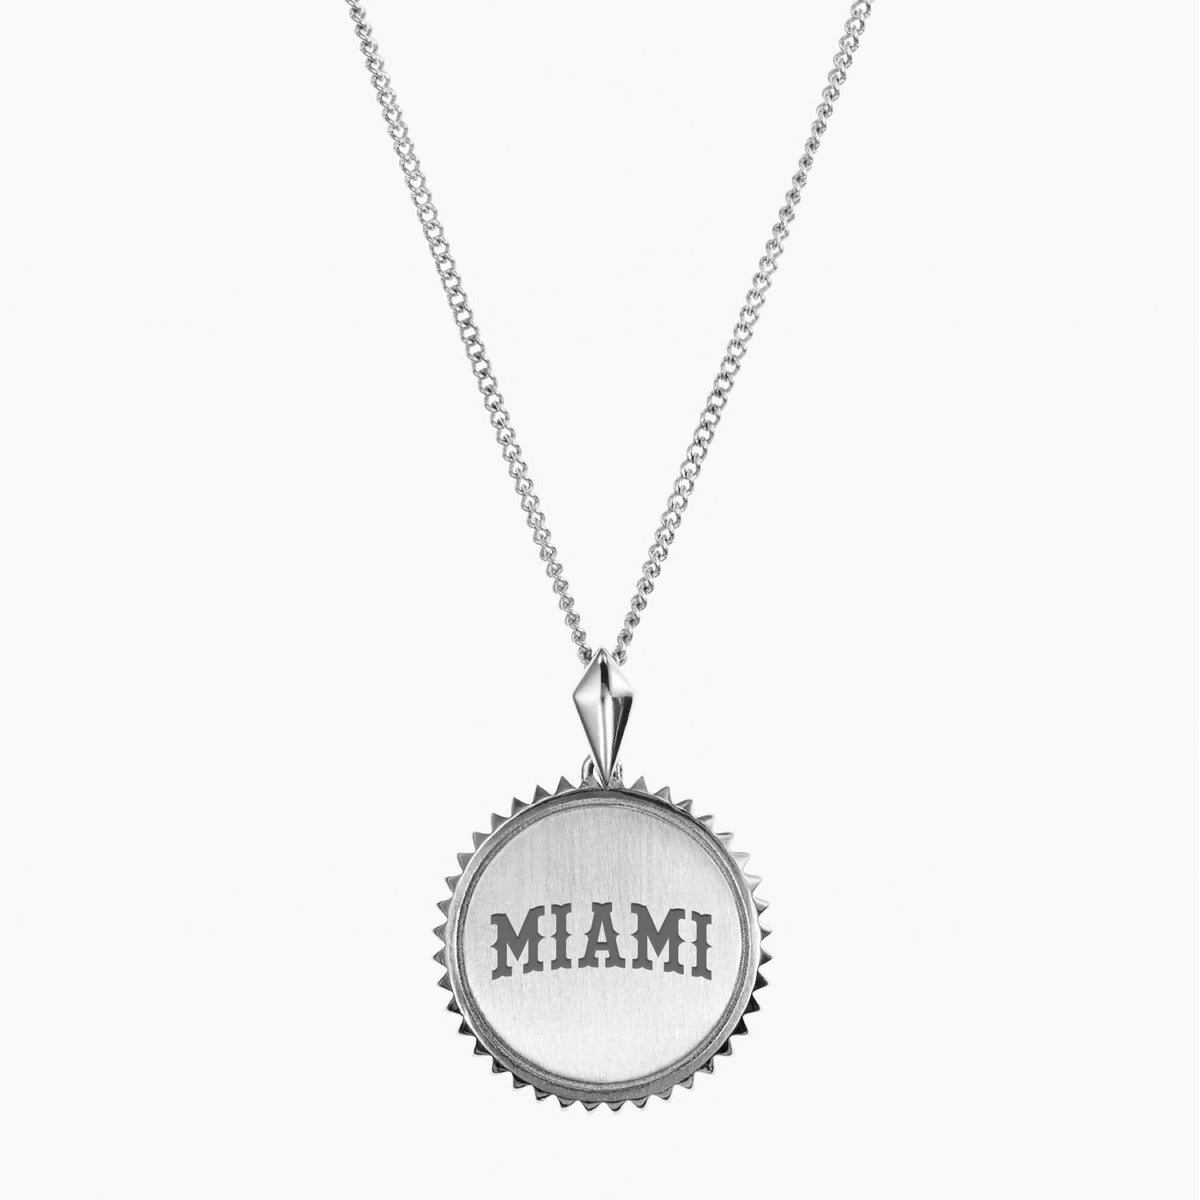 Miami (OH) Vintage Necklace